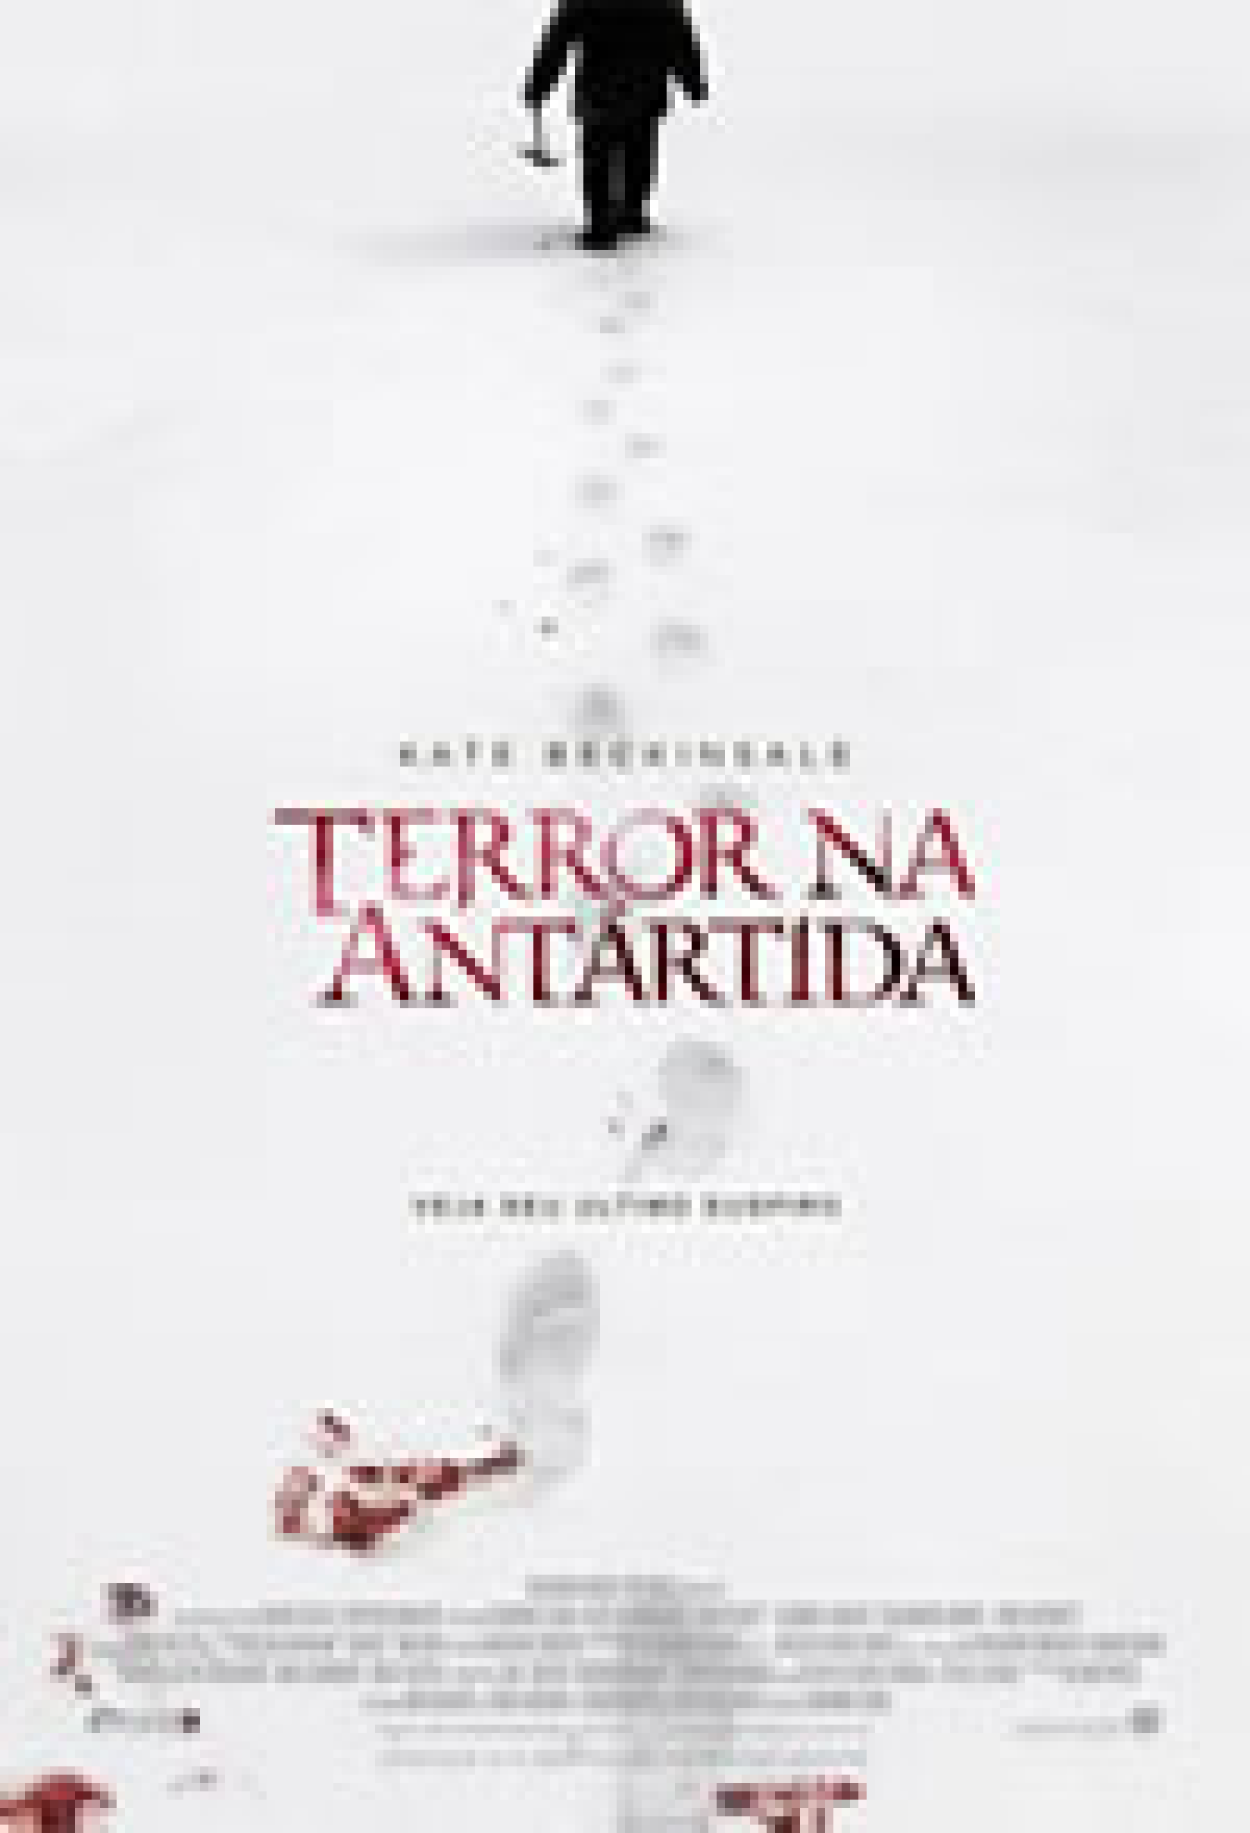 Assassino a Preço Fixo 2 - A Ressureição (Filme), Trailer, Sinopse e  Curiosidades - Cinema10